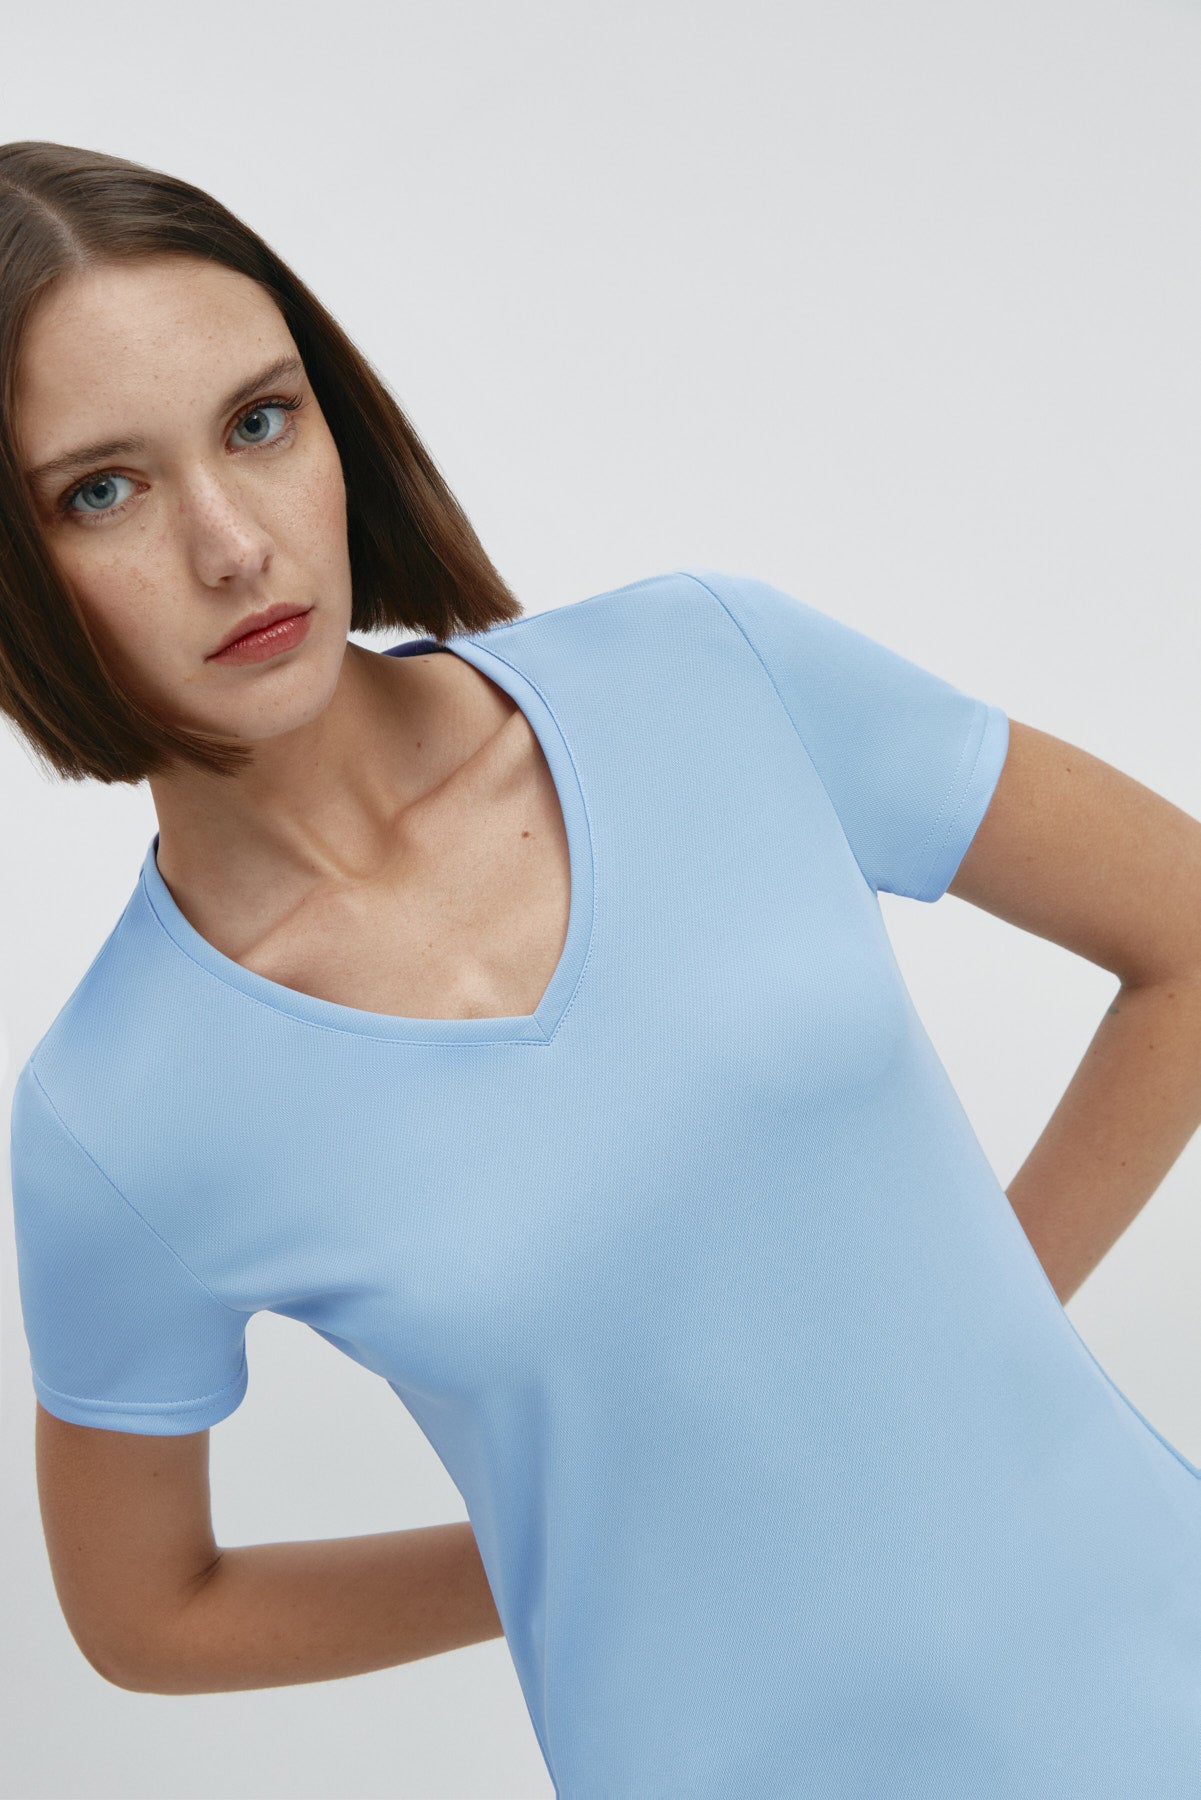 Top para mujer sin mangas con escote pico en color azul niebla, básico y perfecto para el verano. Foto retrato